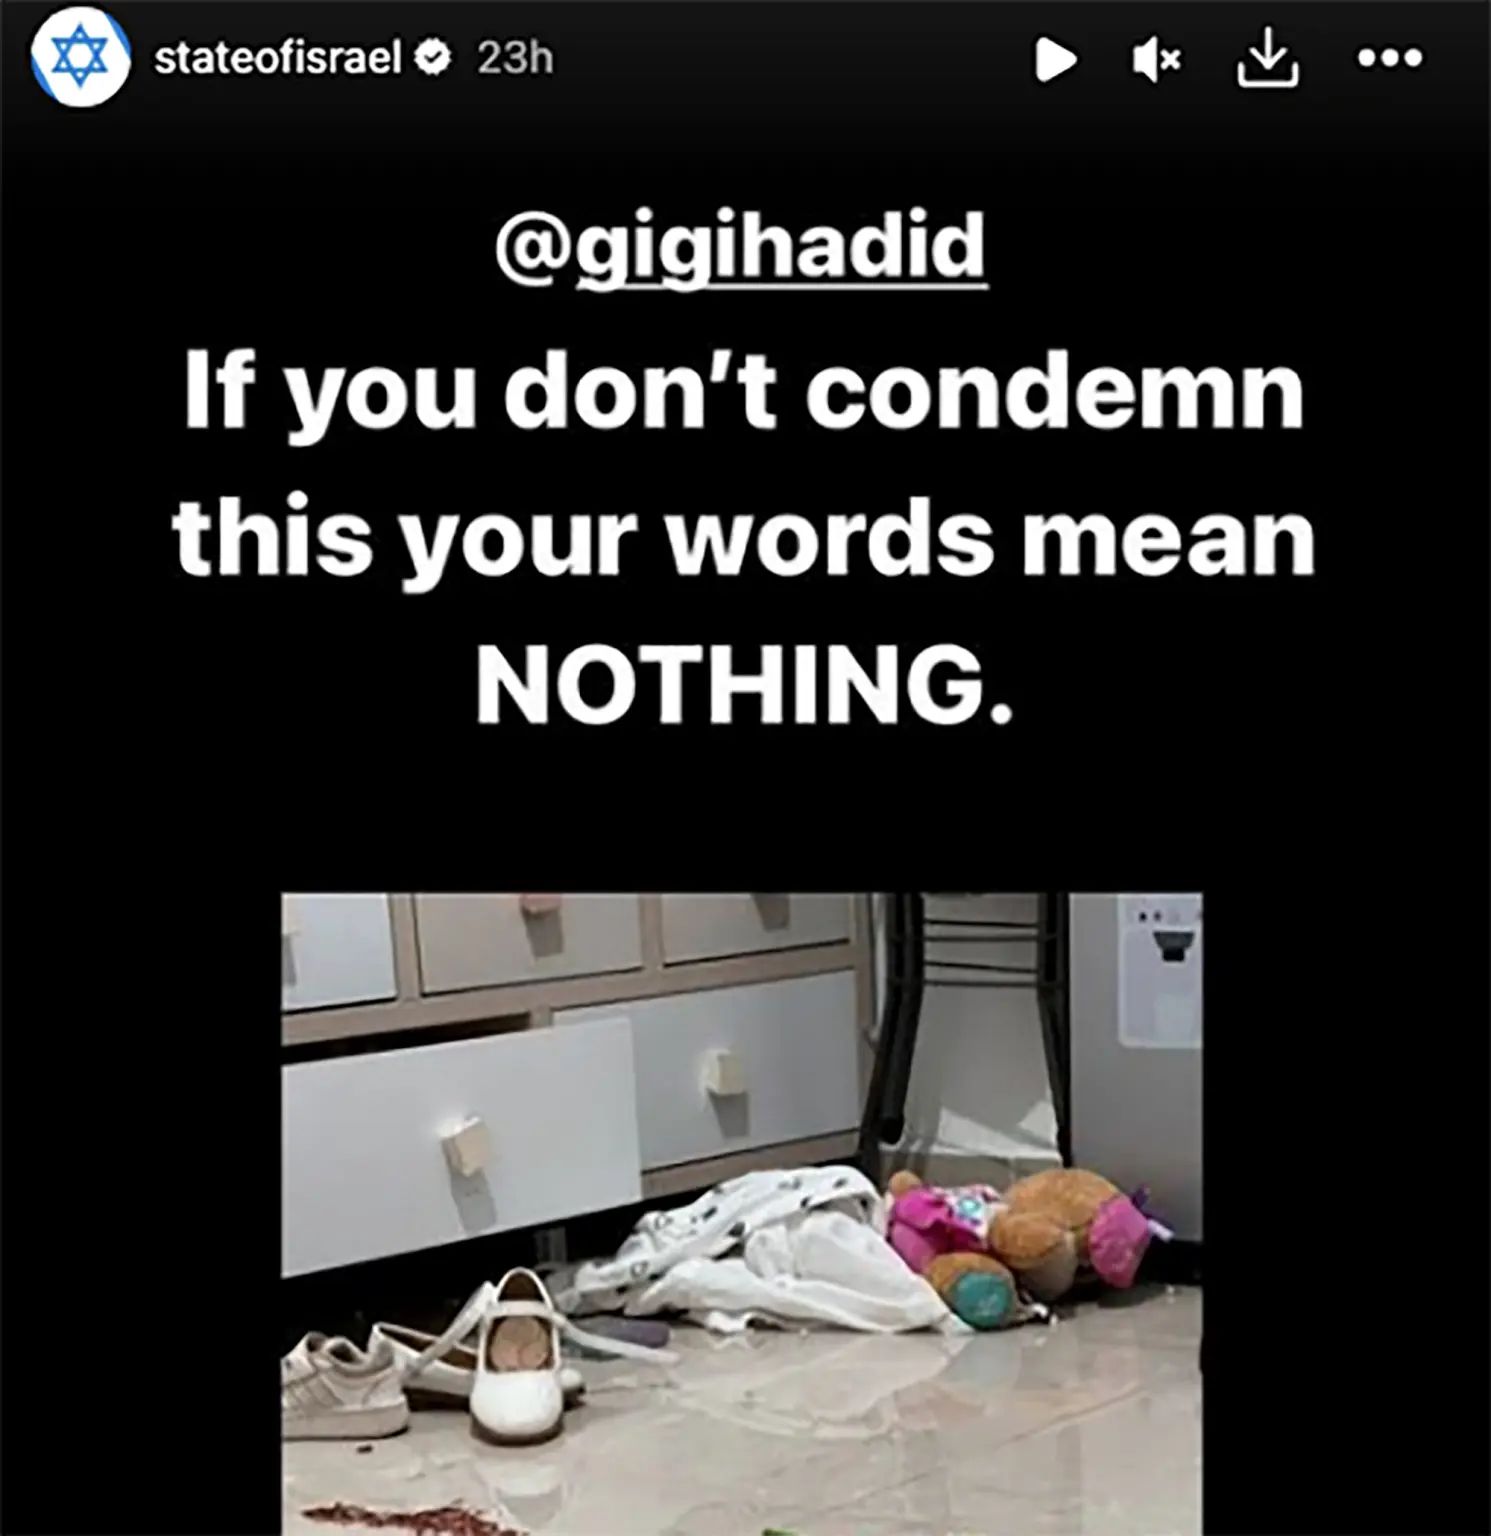 Η Gigi Hadid καταδικάζεται από την Ισραηλινή κυβέρνηση για την θέση της υπέρ των Παλαιστινίων